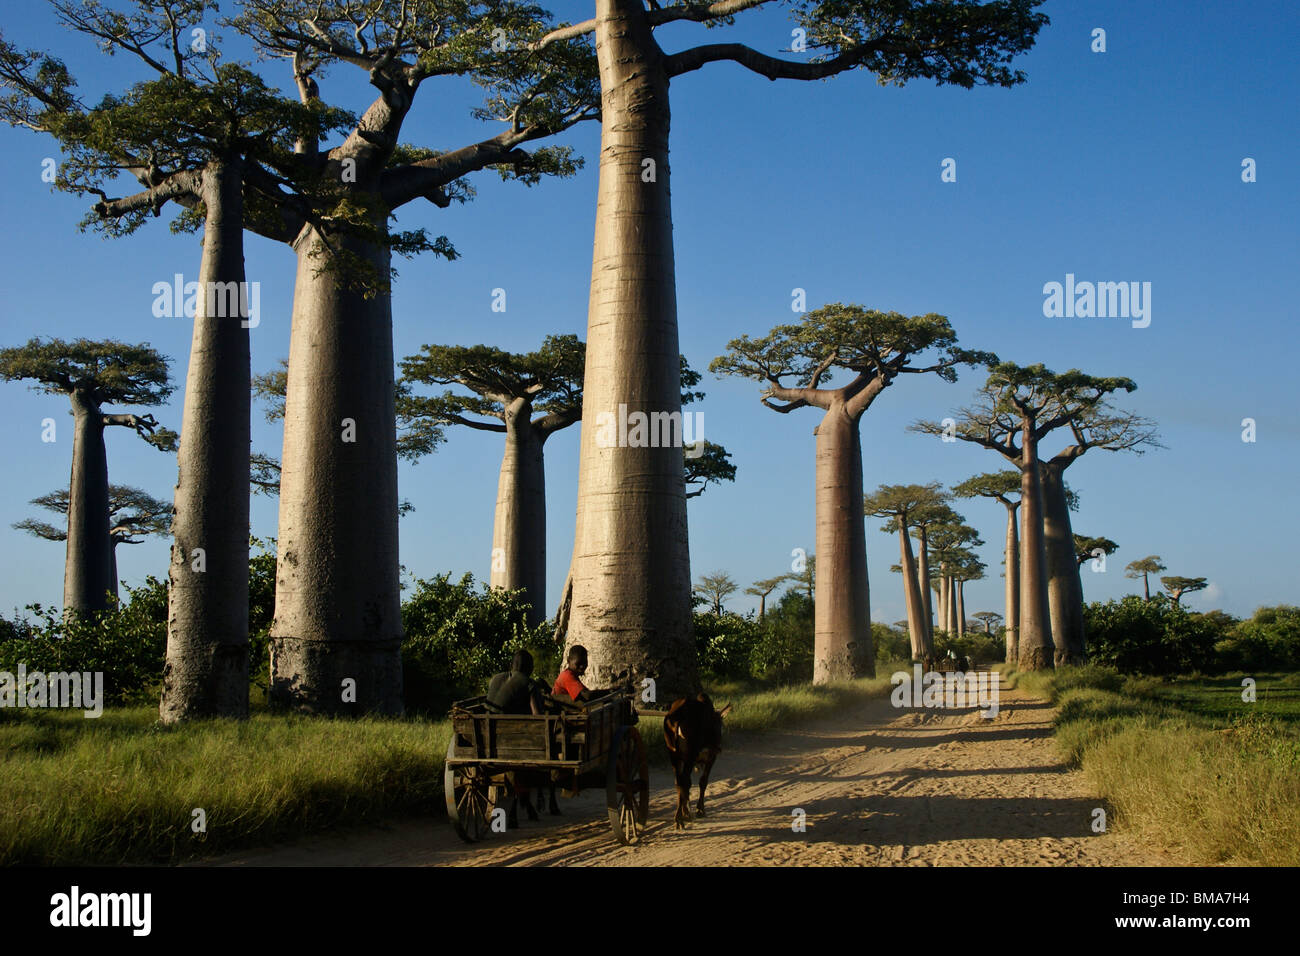 Les charrettes zébus sur l'Avenue des baobabs, Morondava, Madagascar Banque D'Images